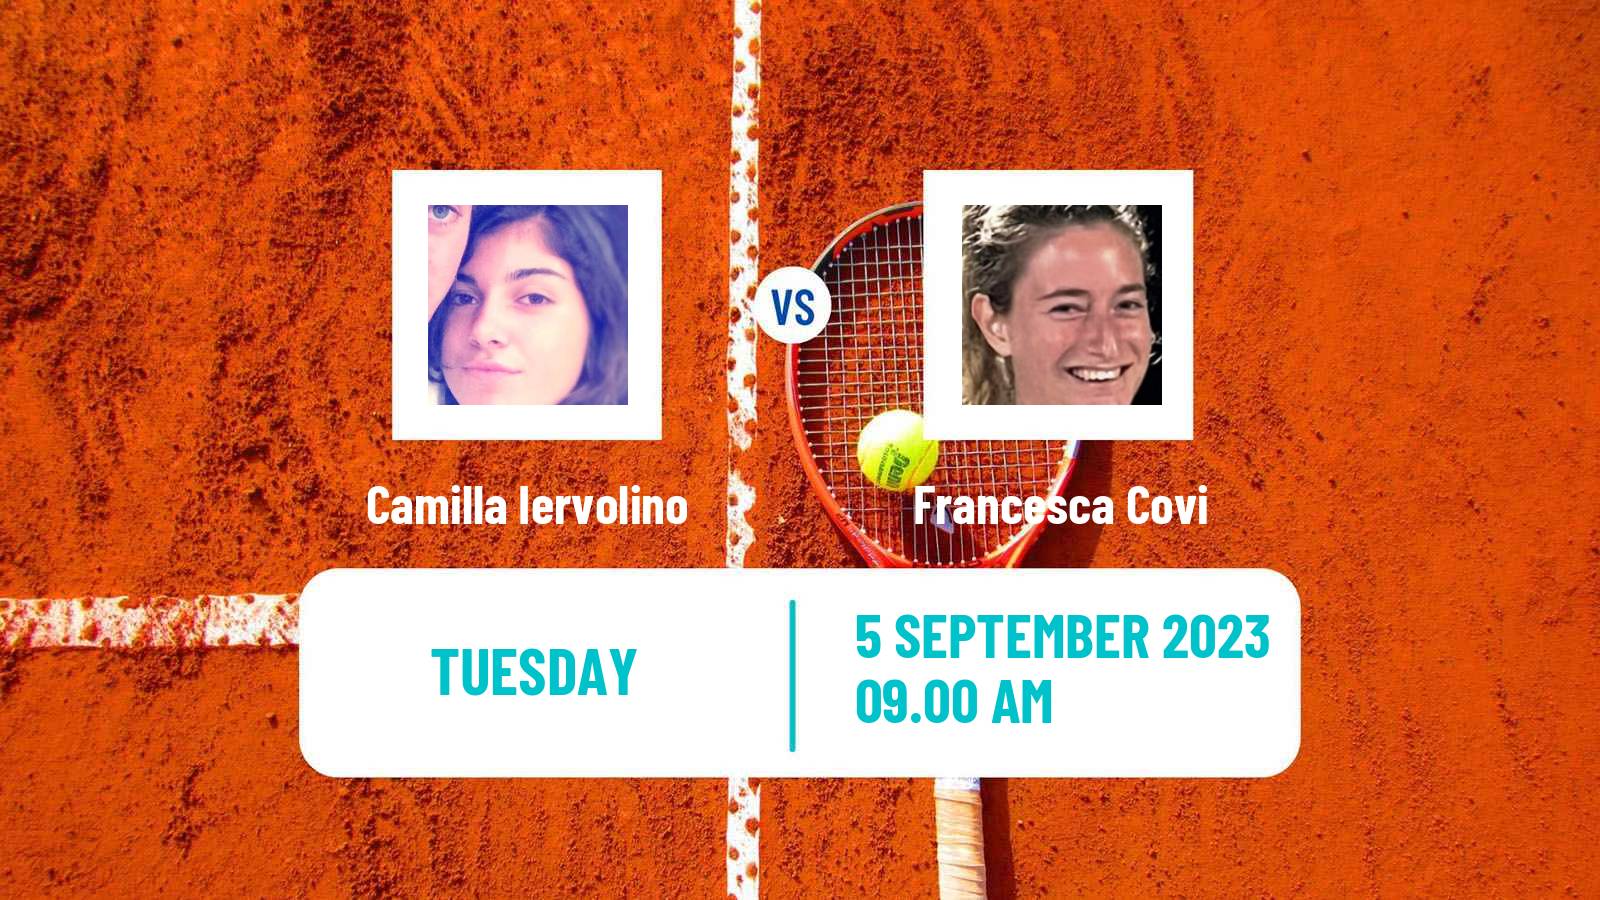 Tennis ITF W15 Fiano Romano Women Camilla Iervolino - Francesca Covi